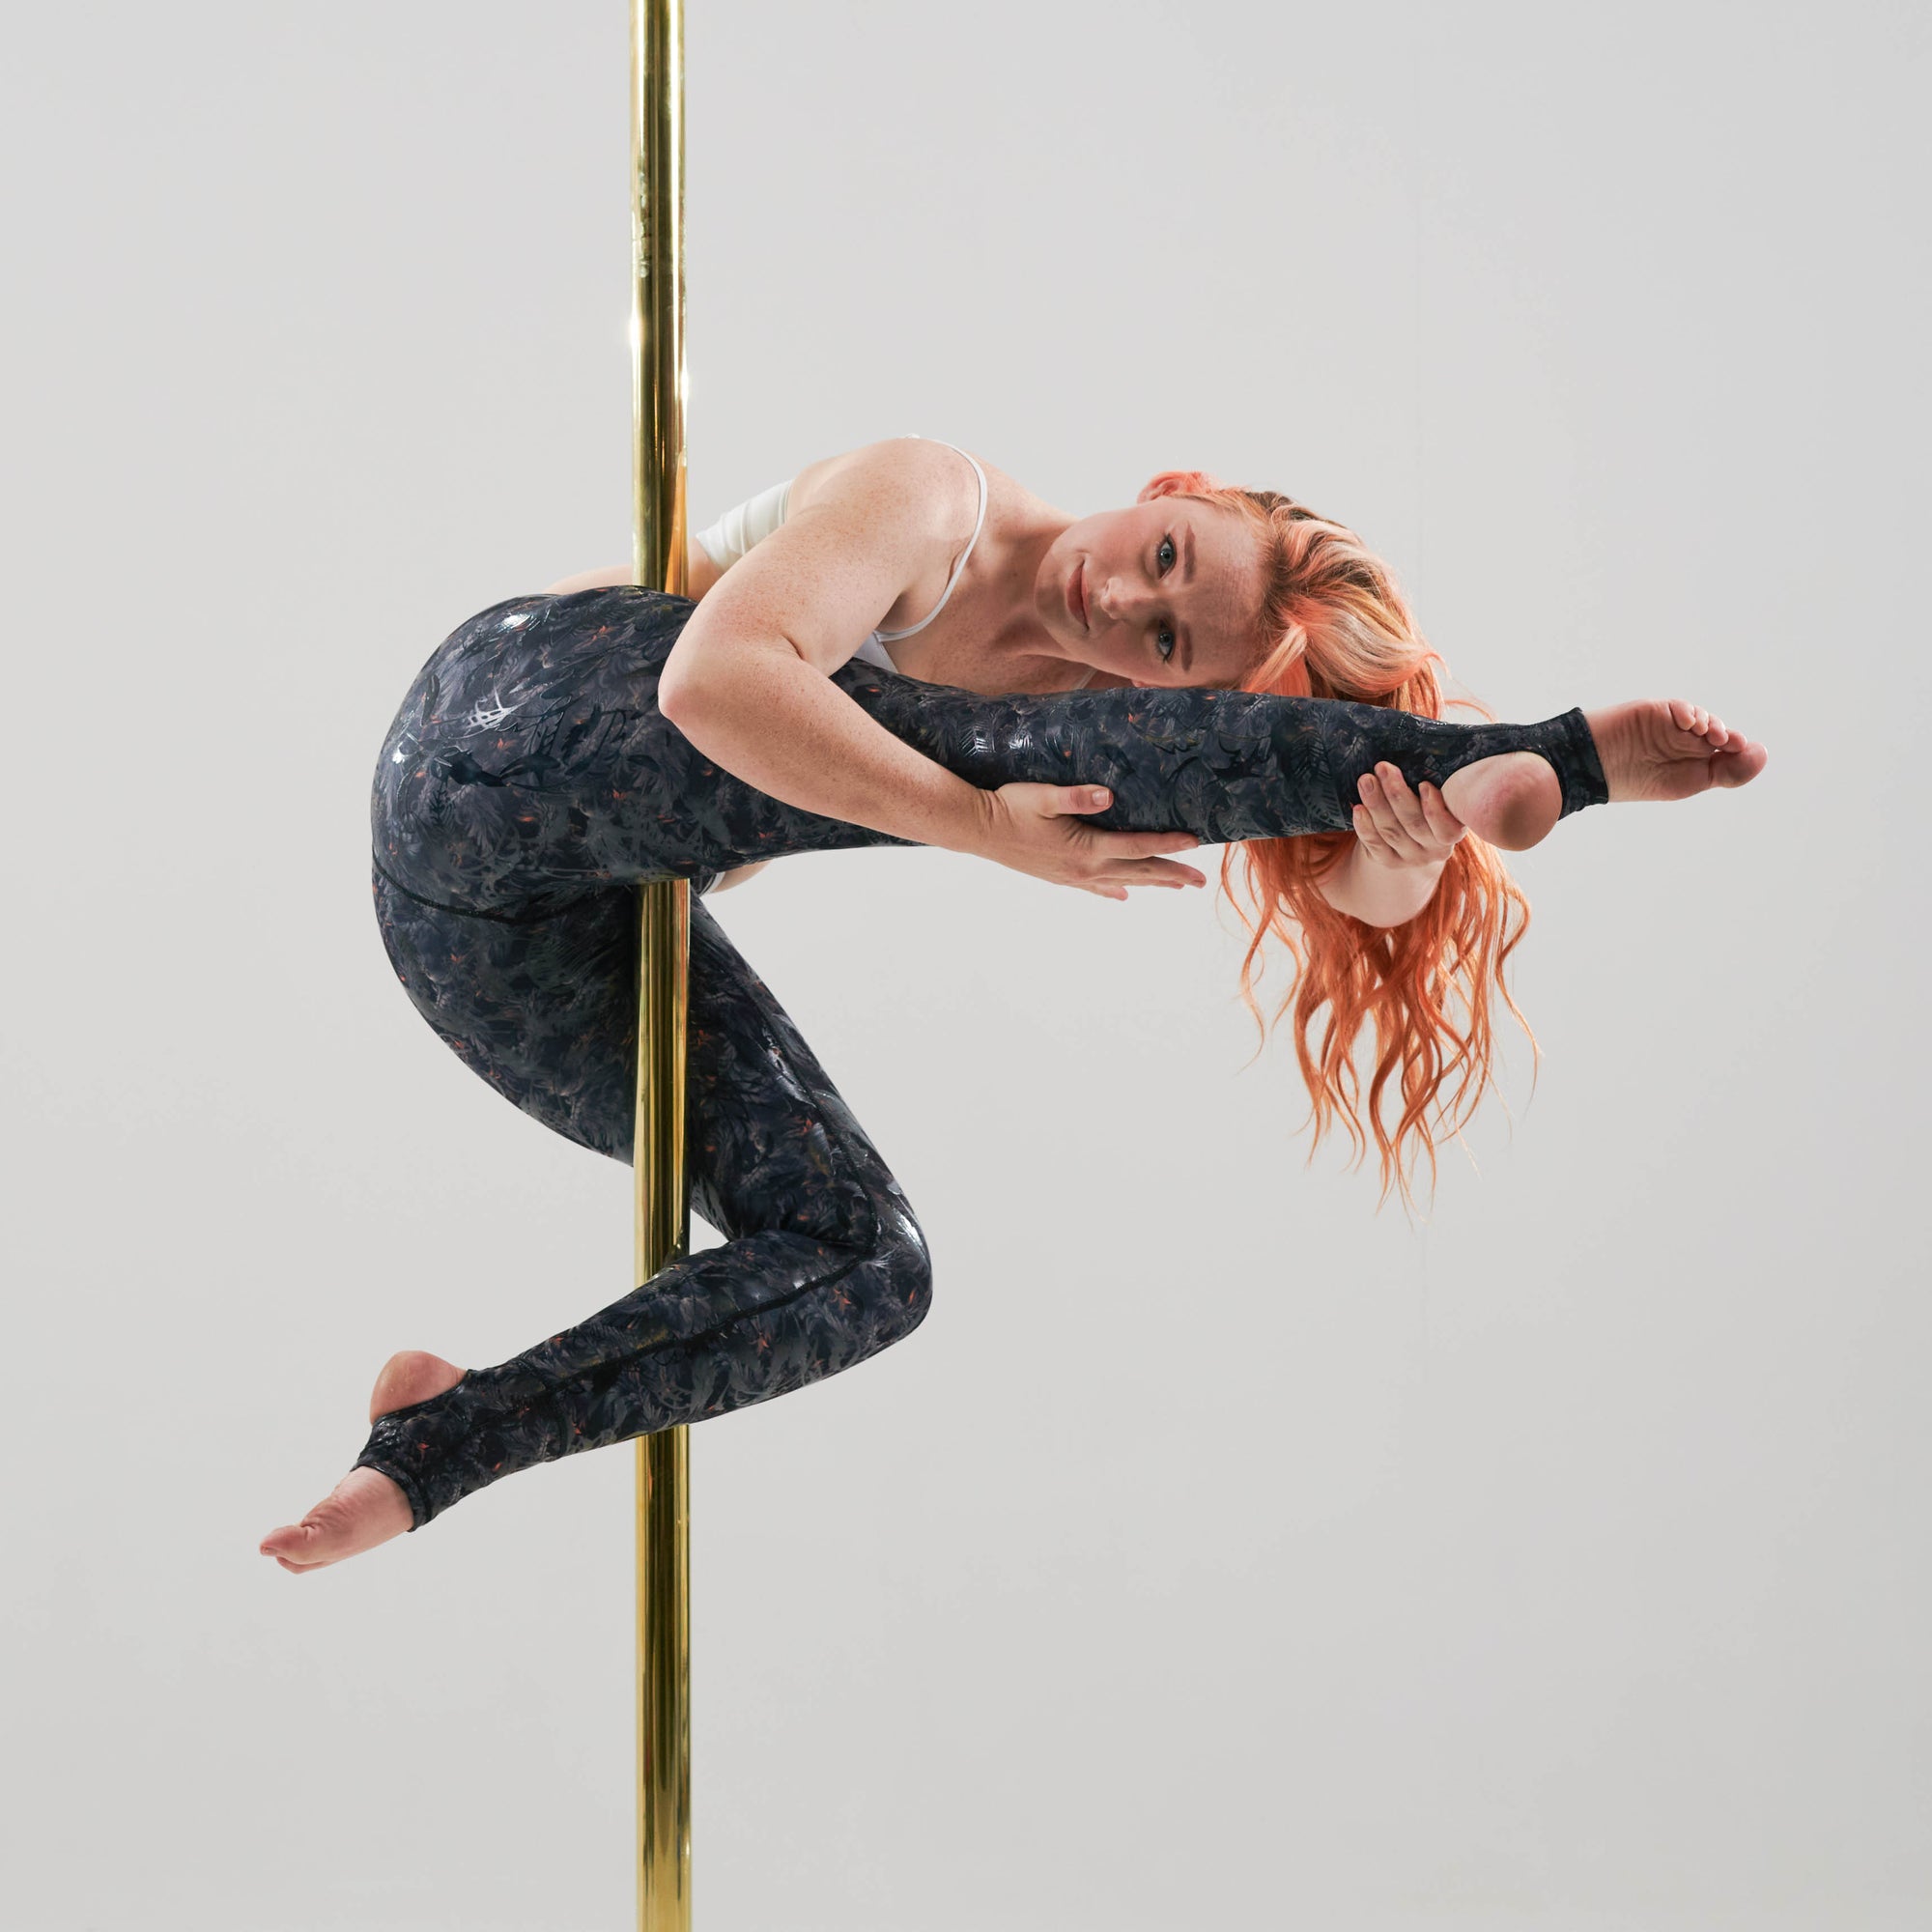 pole dancer in a pole wearing sfh sticky leggings in phoenix